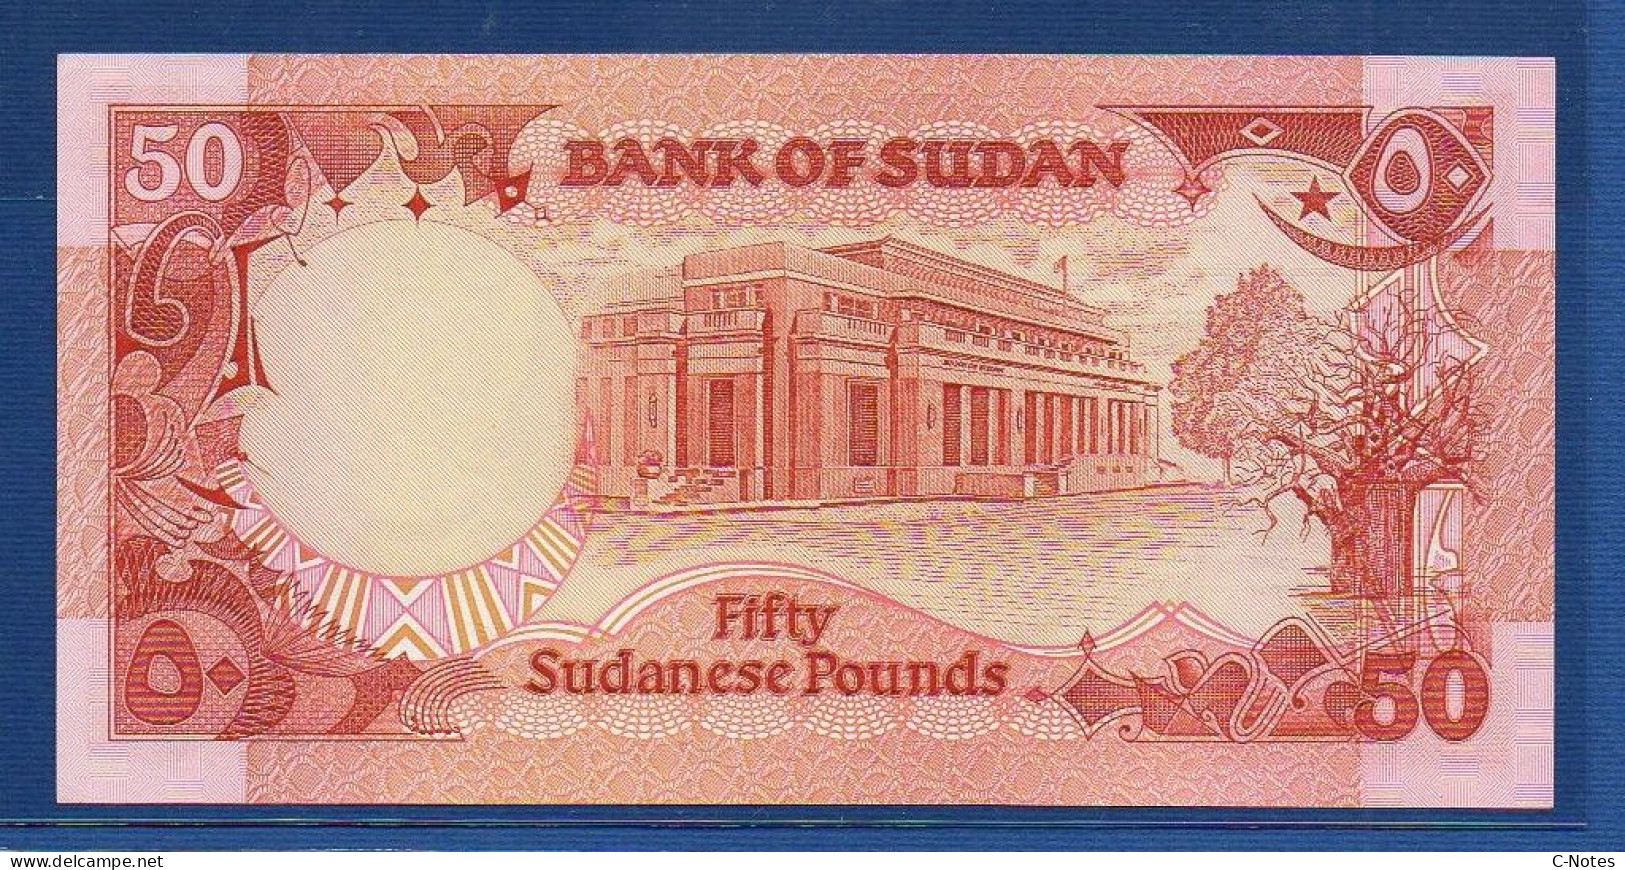 SUDAN - P.43a – 50 Sudanese Pounds 1987 UNC-, S/n G/59 892249 - Soudan